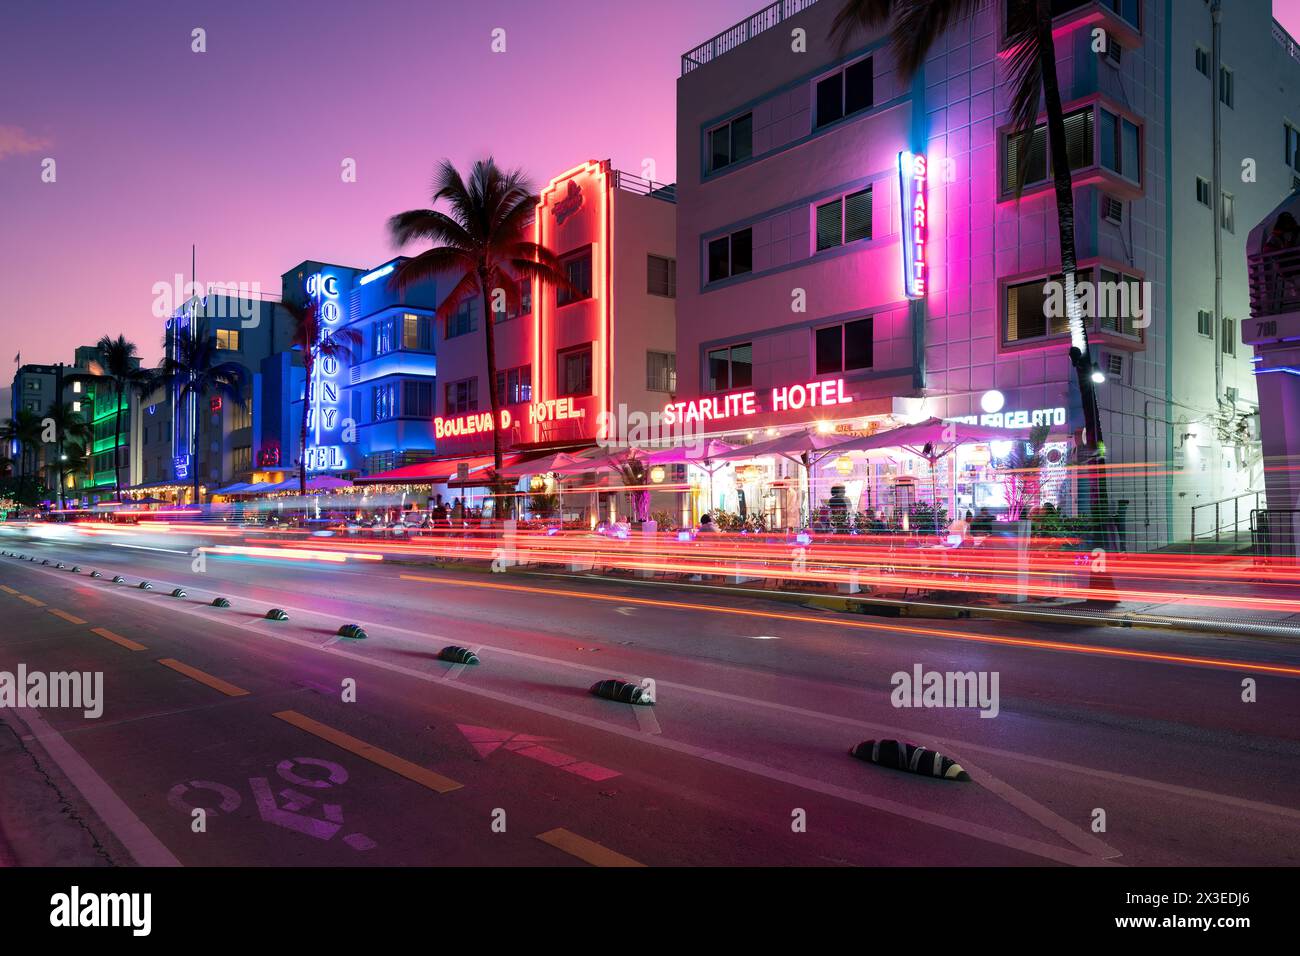 South Beach, Miami, Floride, États-Unis - Hôtels, bars et restaurants à Ocean Drive, dans le célèbre quartier art déco. Banque D'Images